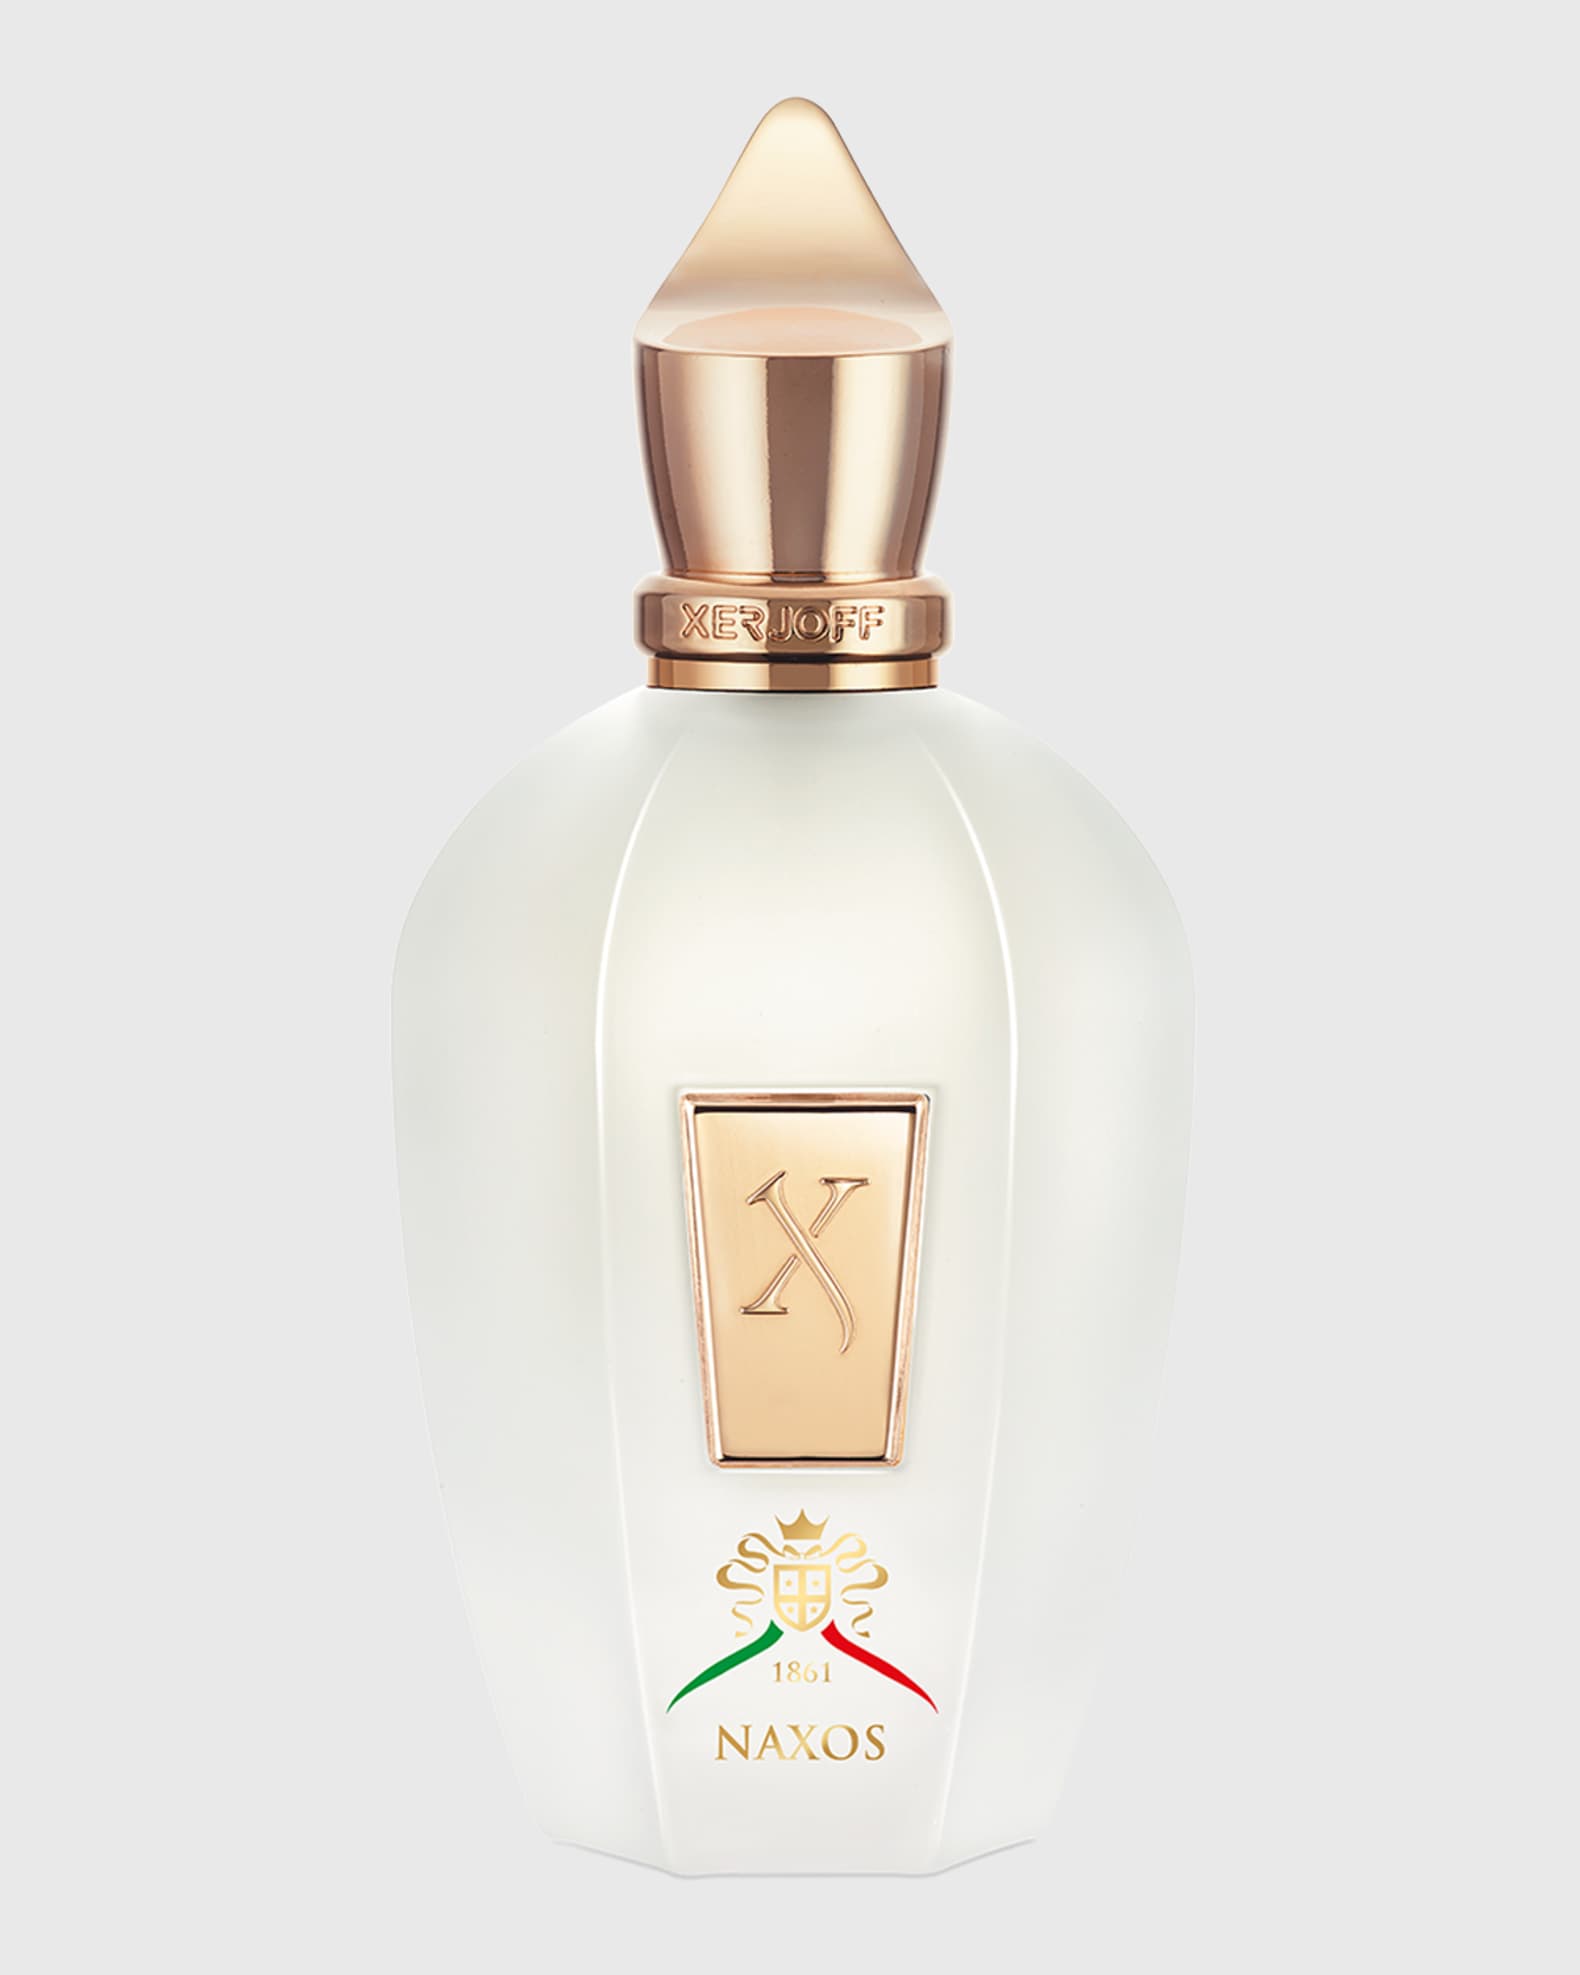 Shop for samples of On the Beach (Eau de Parfum) by Louis Vuitton